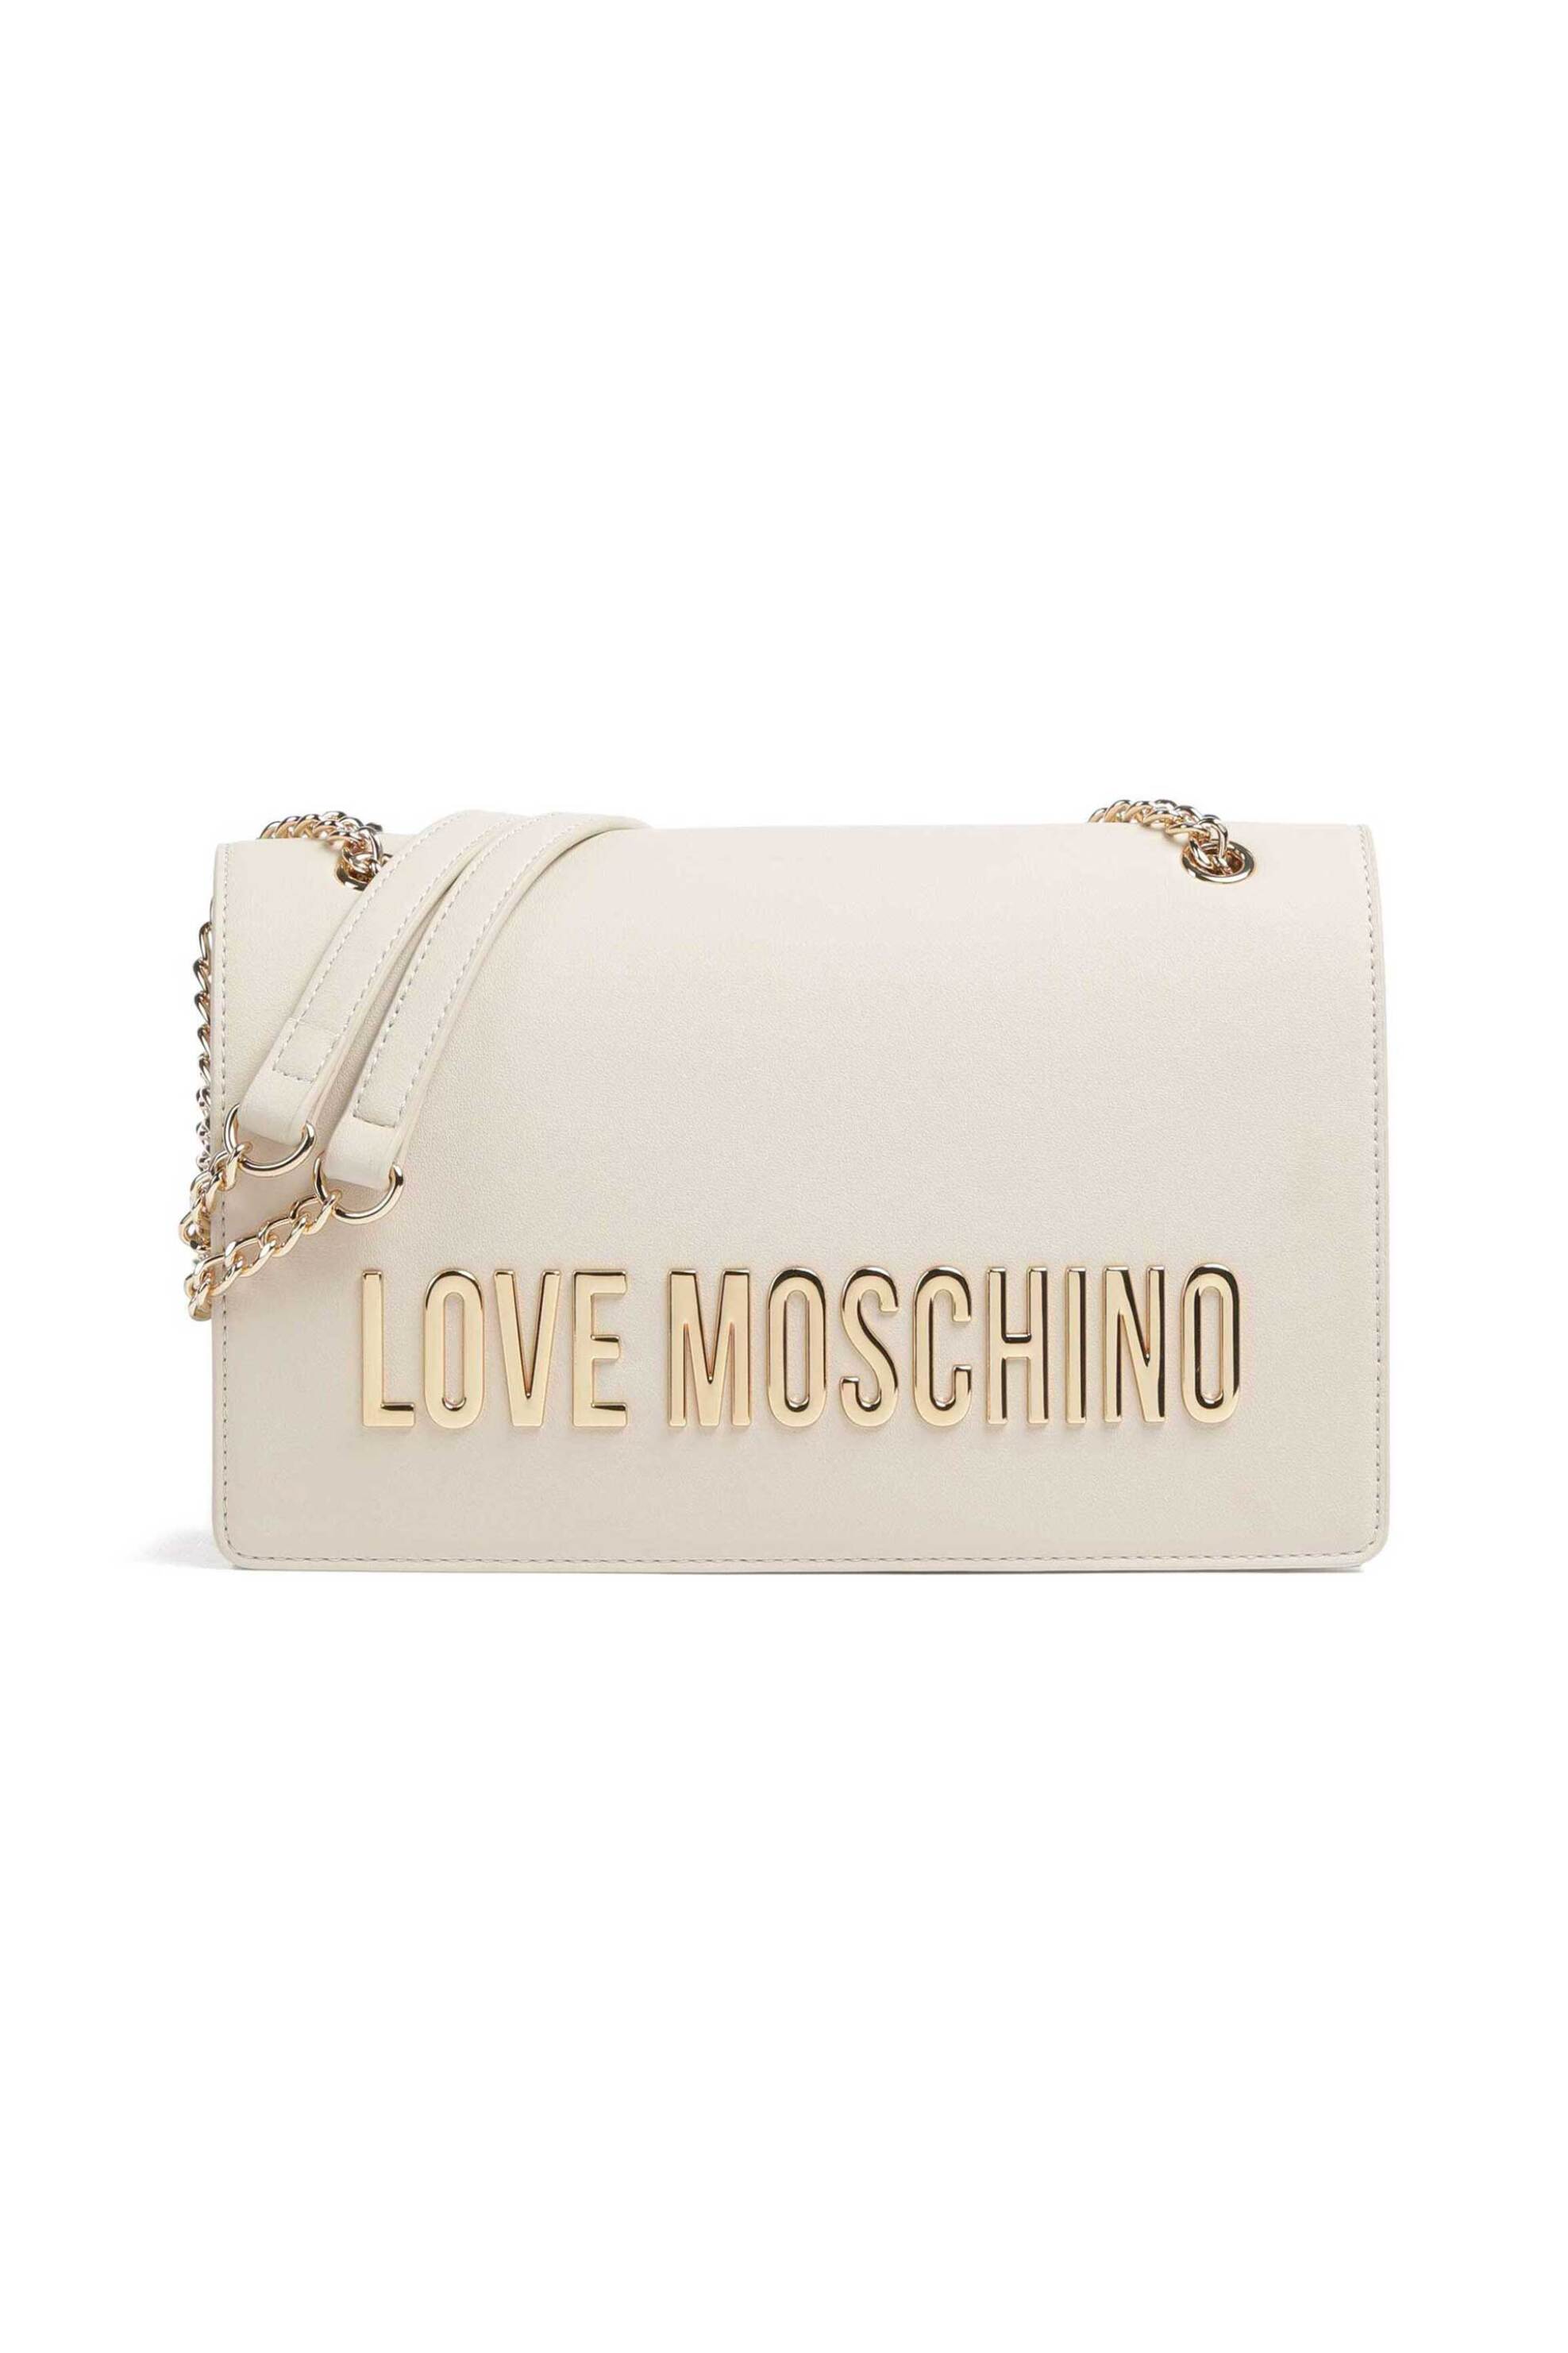 Γυναίκα > ΤΣΑΝΤΕΣ > Τσάντες Ώμου & Shopper Bags Love Moschino γυναικεία τσάντα ώμου μονόχρωμη με ανάγλυφο λογότυπο "Bold Love" - JC4192PP1IKD0 Εκρού